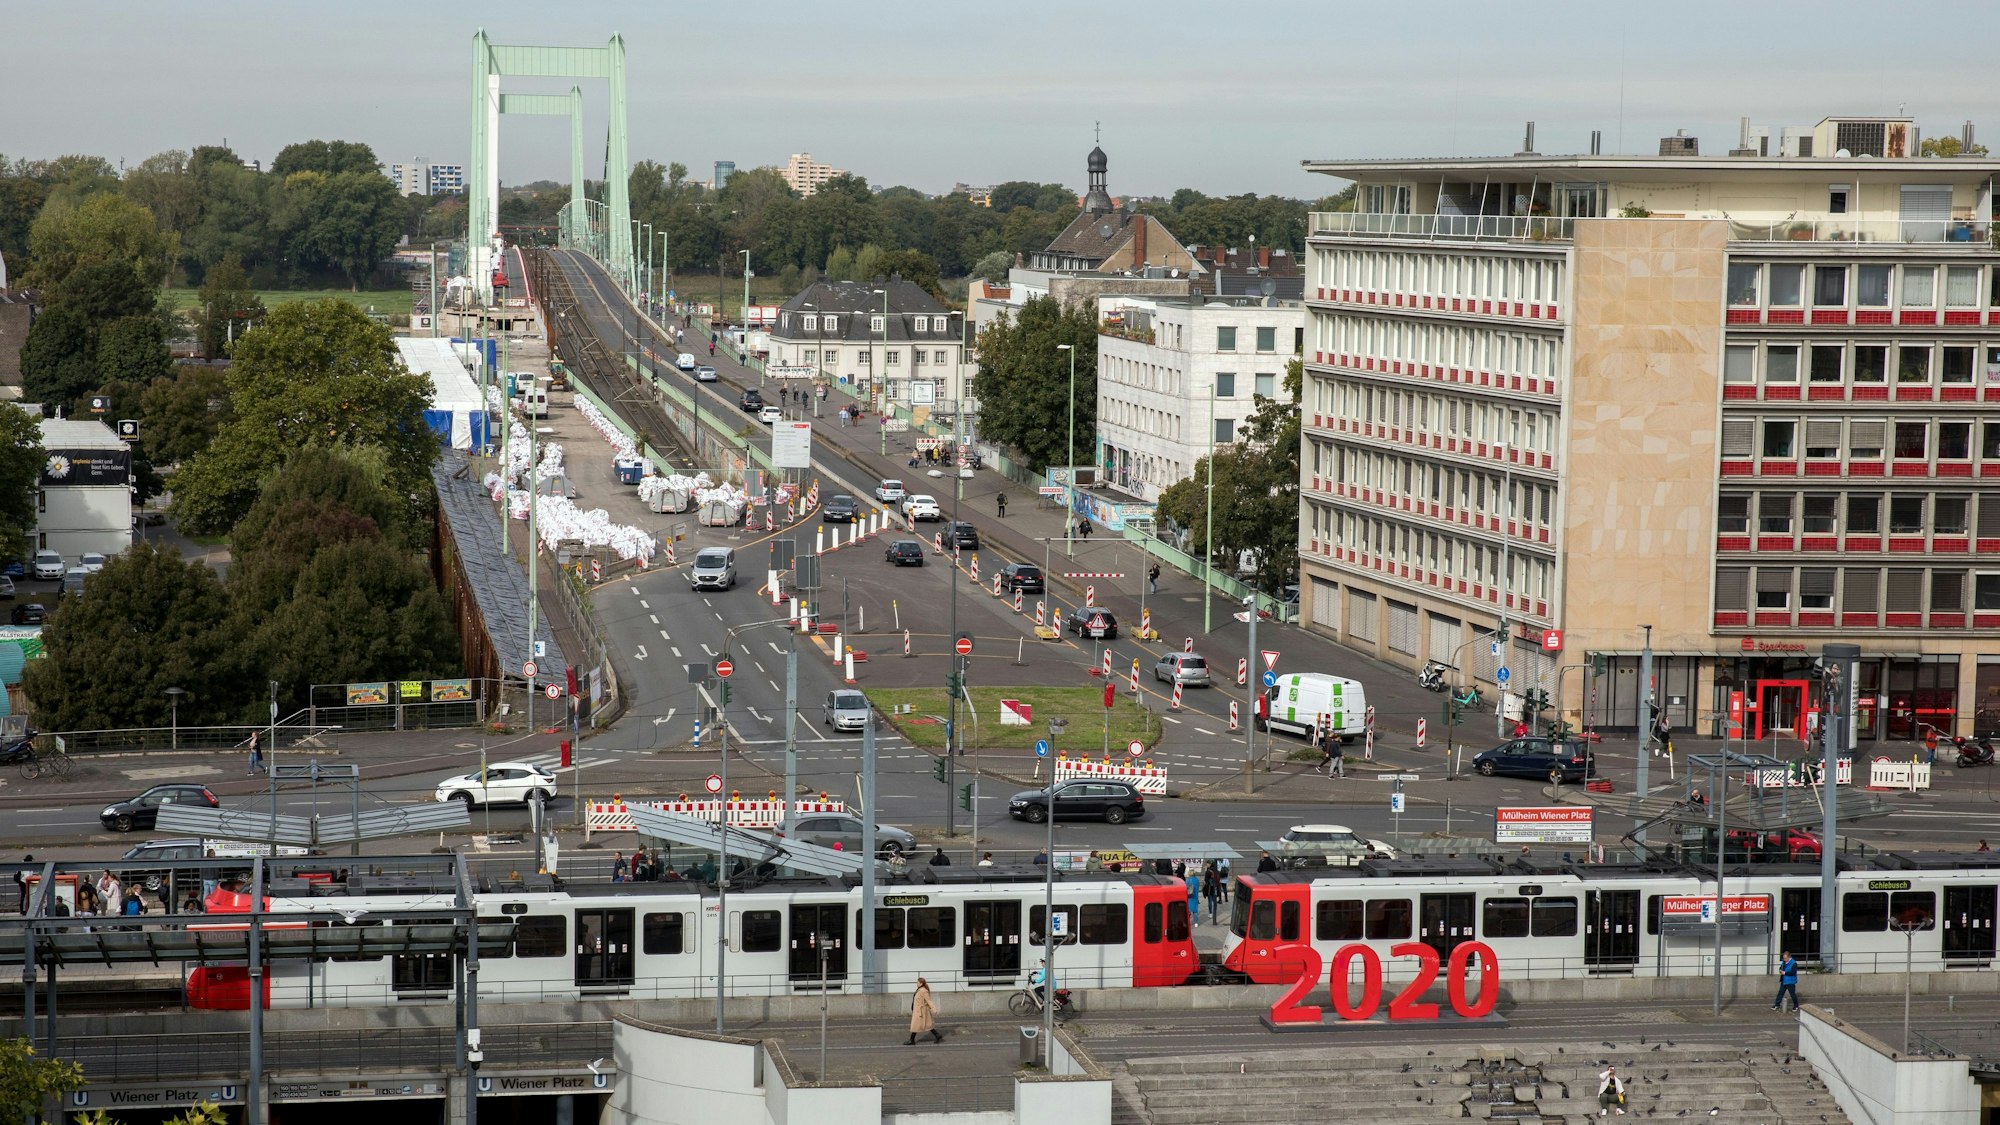 Blick vom Wiener Platz auf die Mülheimer Brücke.